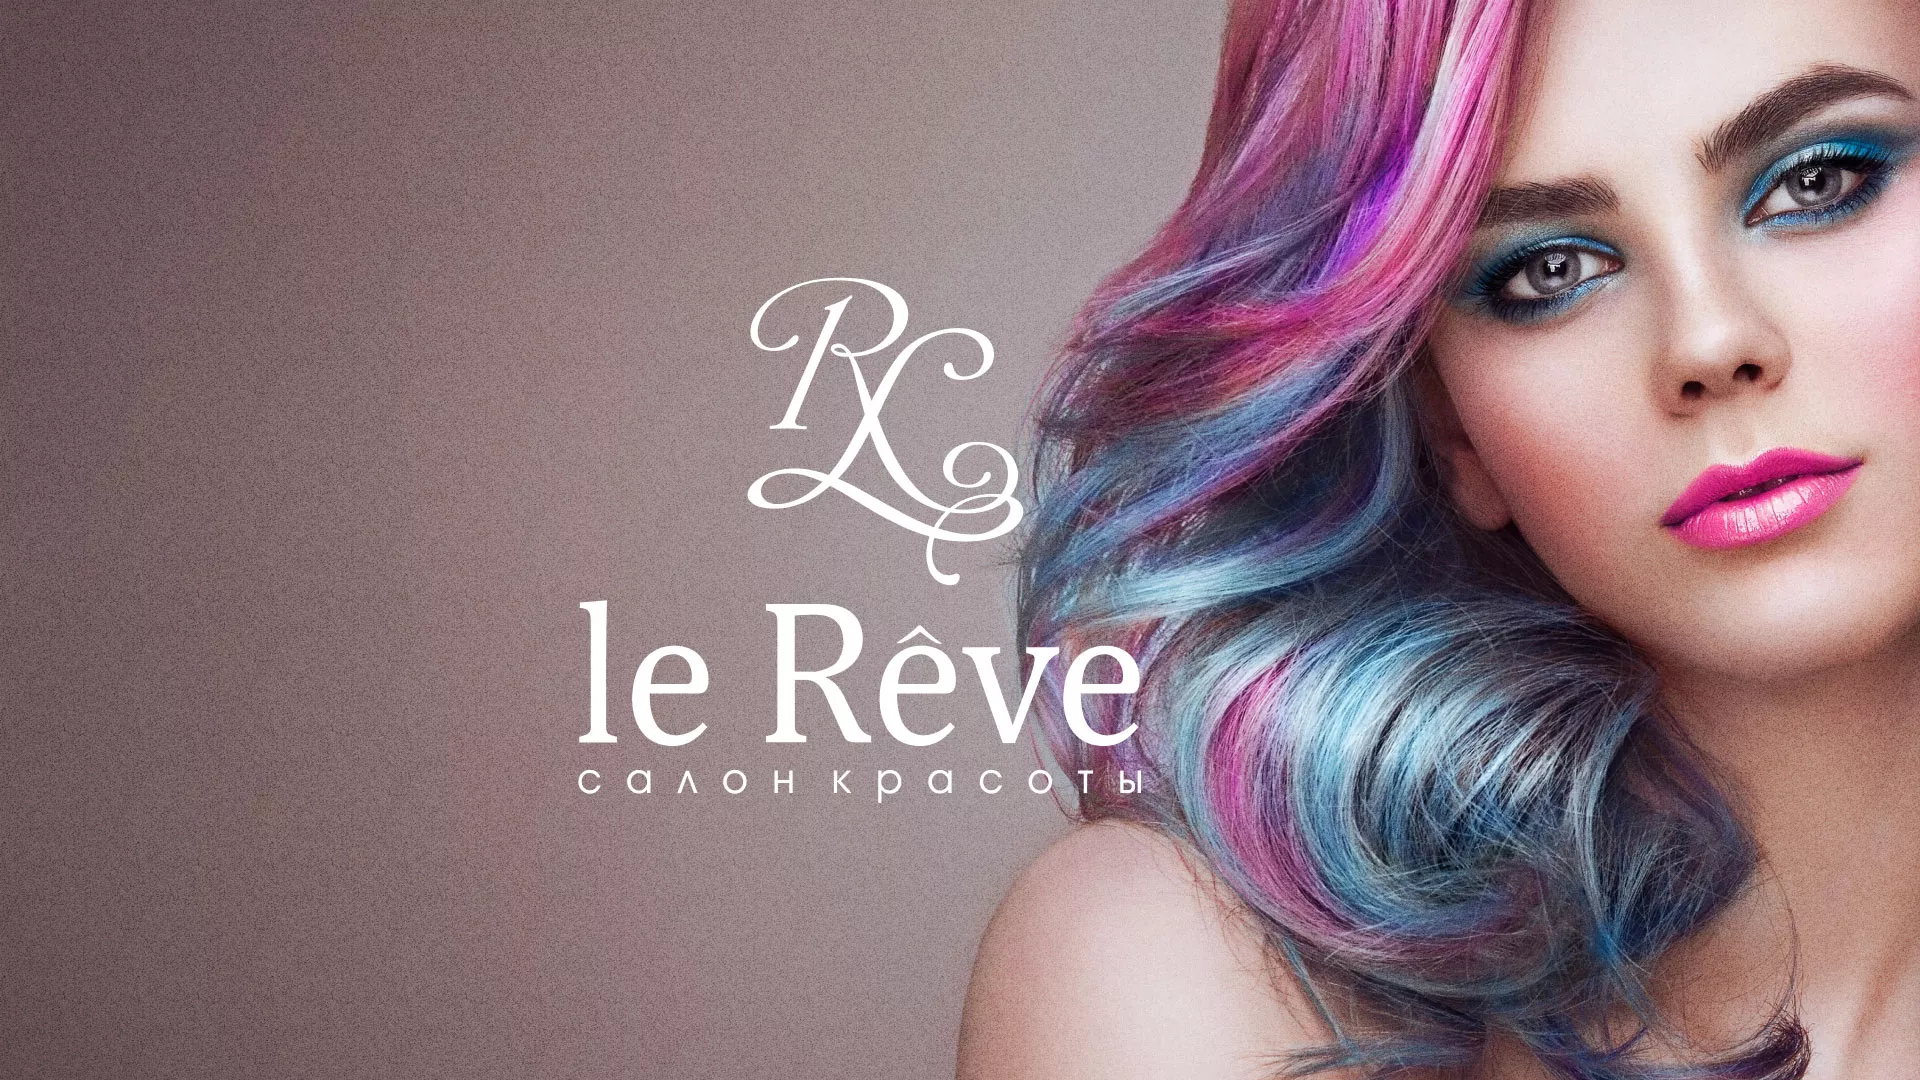 Создание сайта для салона красоты «Le Reve» в Ефремове